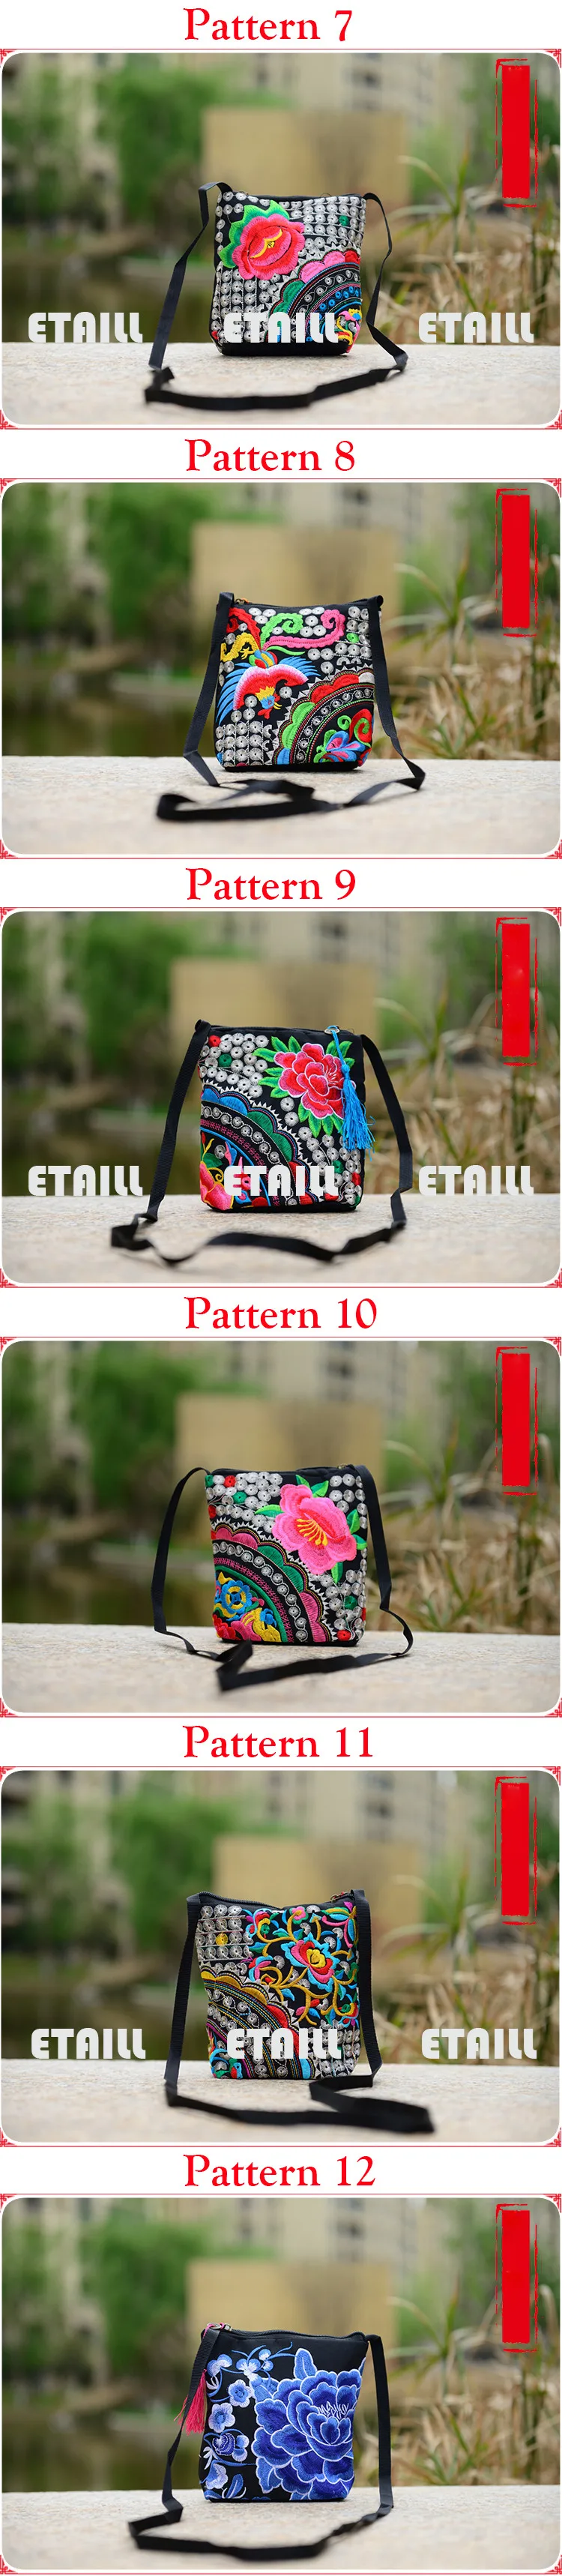 Цветочная Бохо тайская вышитая холщовая сумка-мессенджер Китайская национальная маленькая сумка через плечо известный бренд сумки через плечо